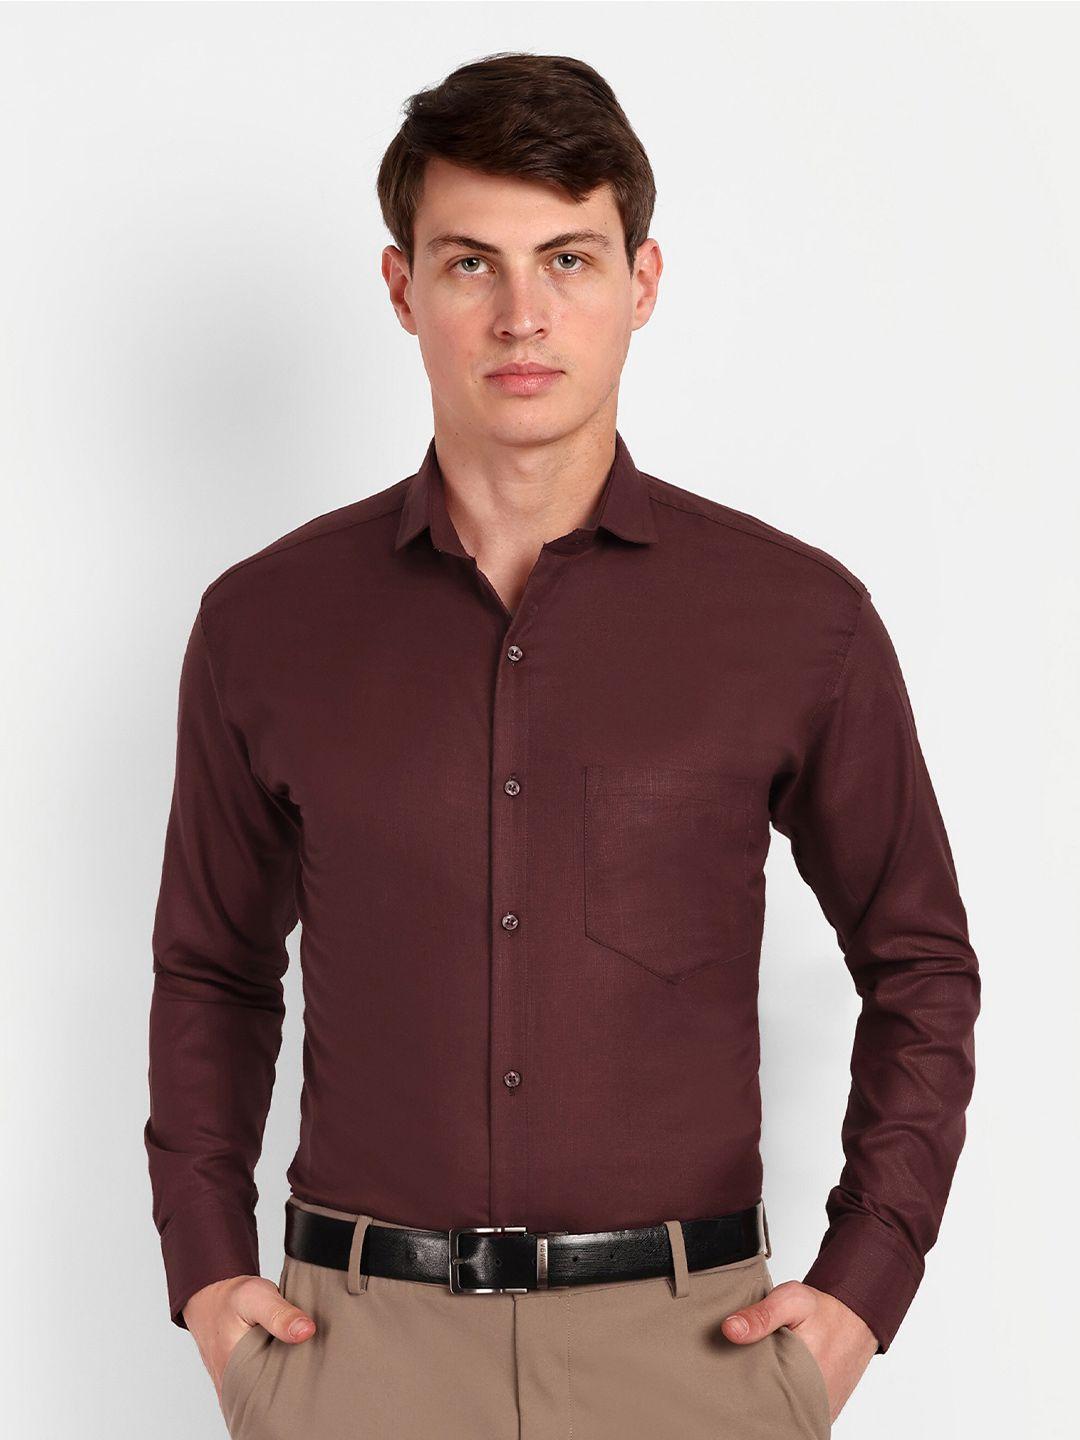 colorwings men maroon comfort semi sheer formal shirt